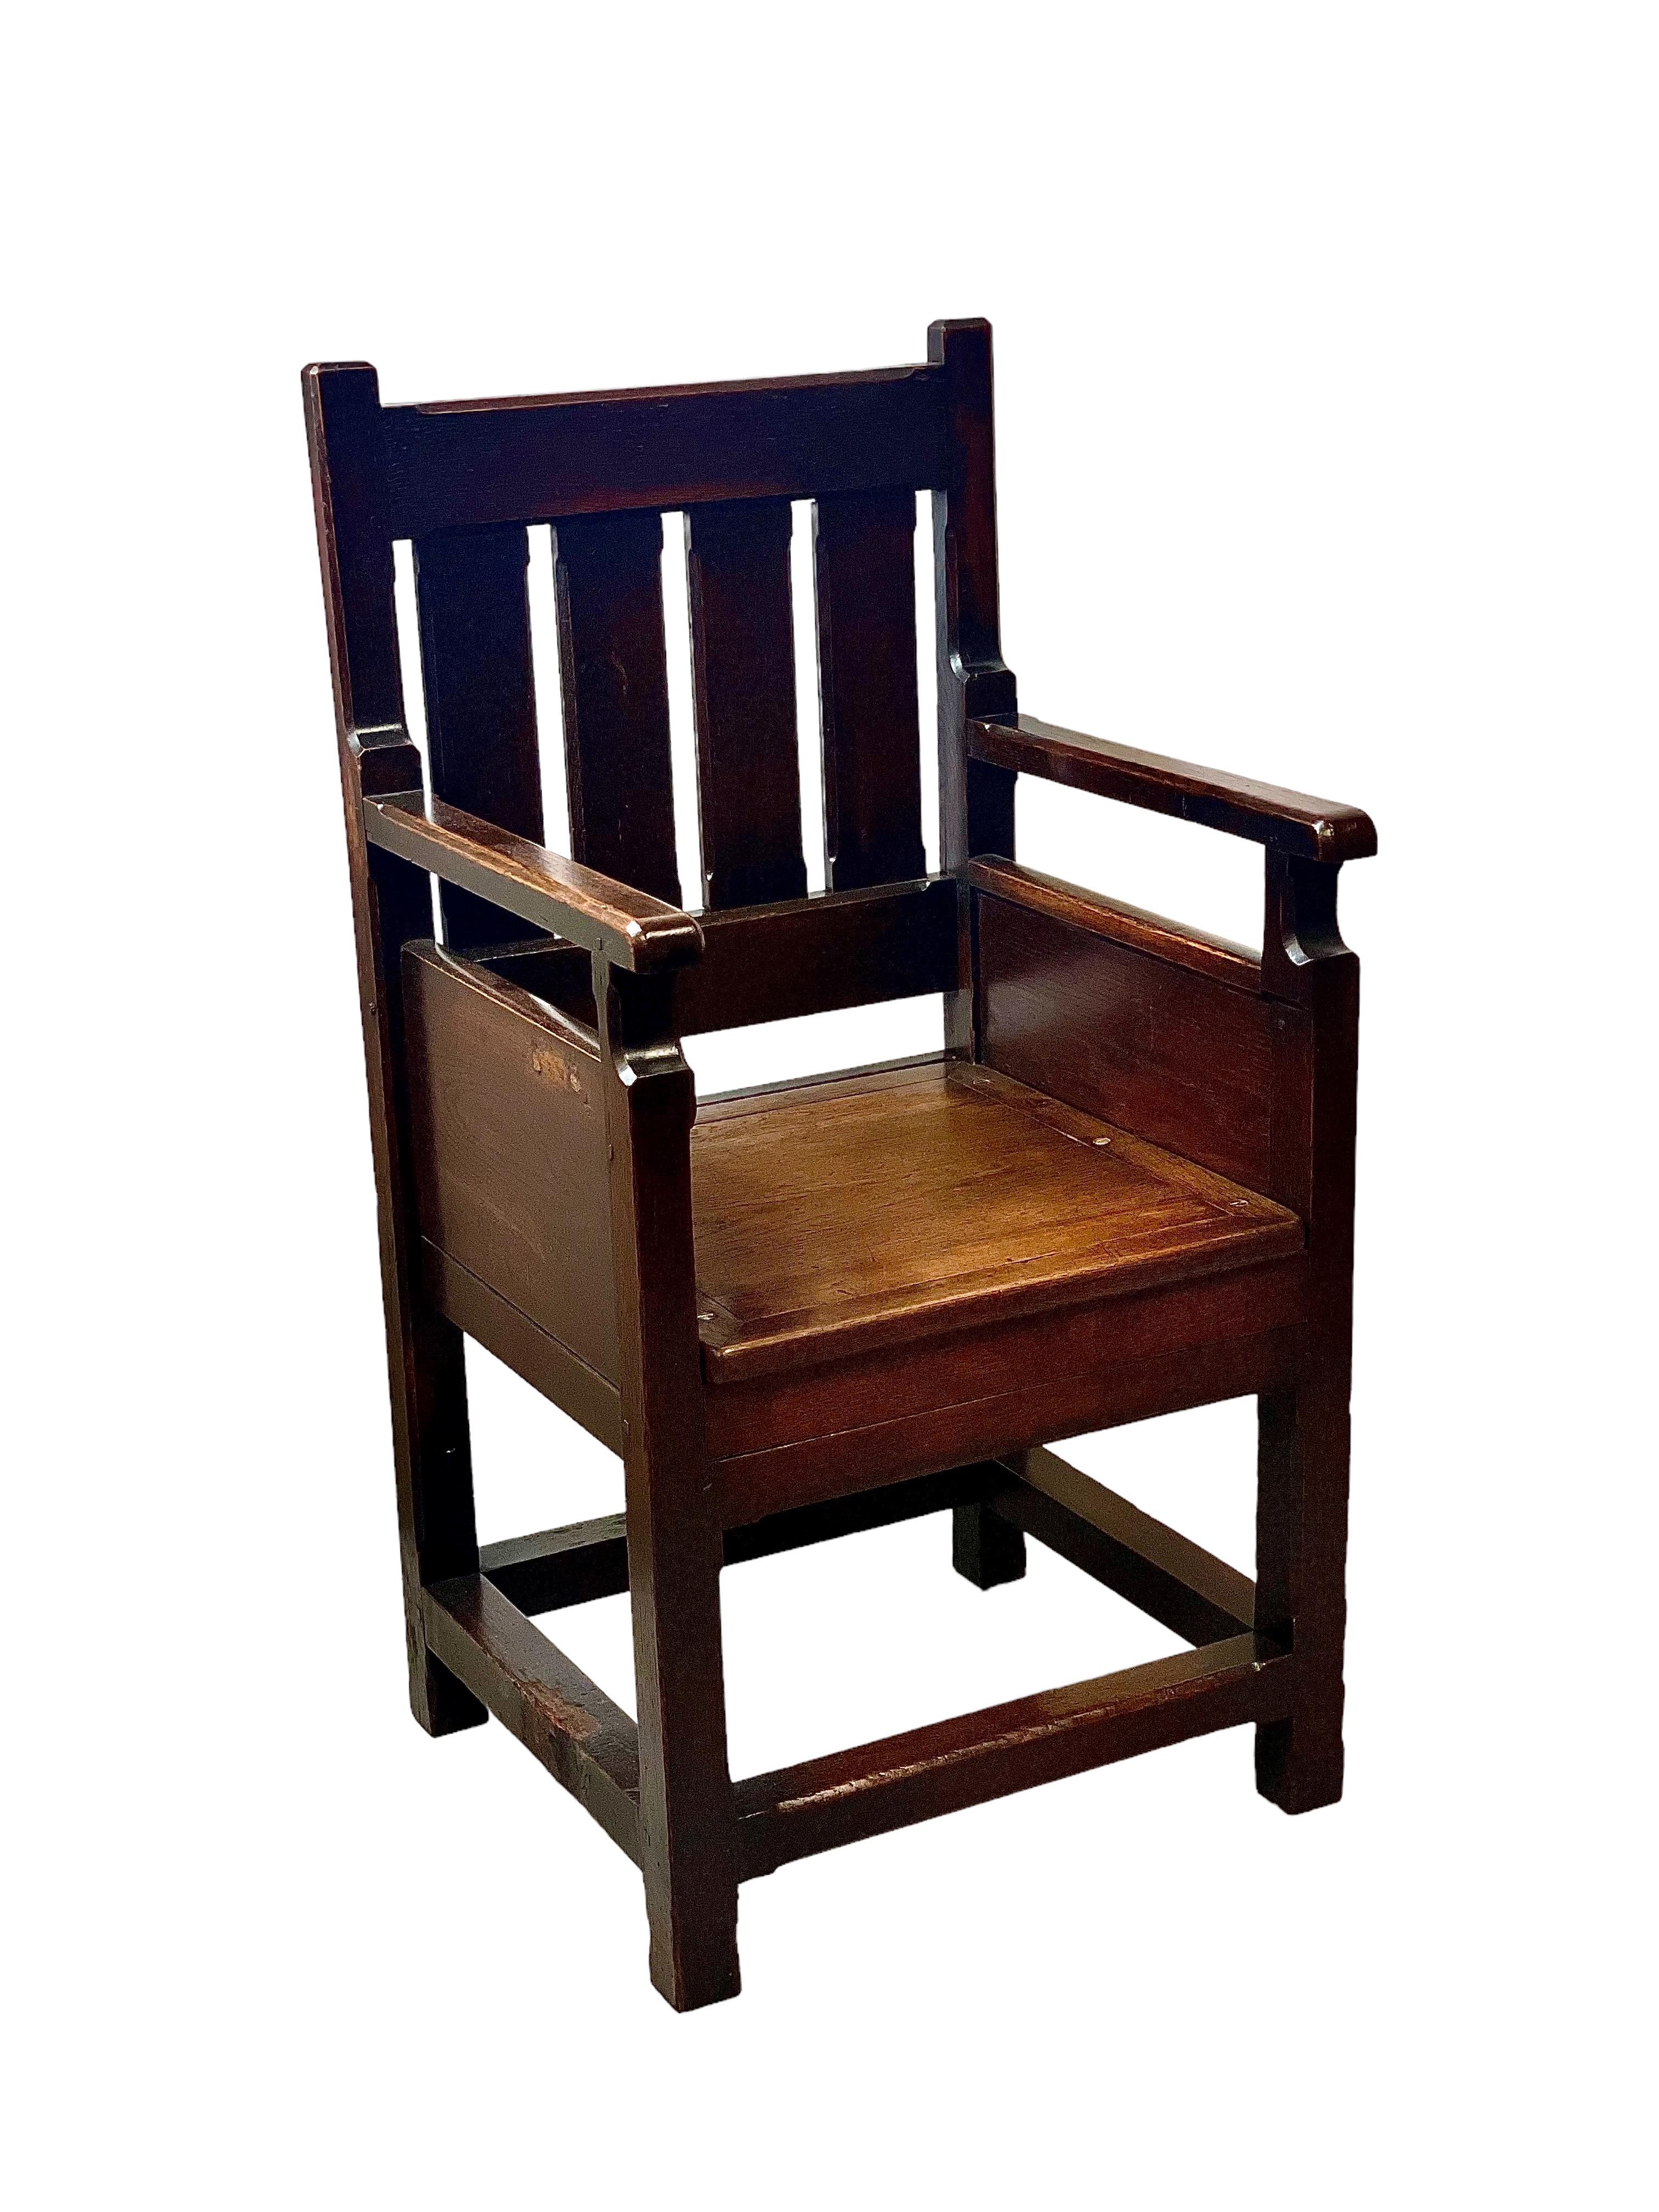 Ein sehr interessanter Sessel aus Eichenholz aus dem 17. Jahrhundert, der um 1630 entstanden ist und einen flachen, geplankten Sitz, massive Flanken und eine gelattete Rückenlehne aufweist. Auf einem quadratischen Gestell mit umlaufenden Streckern